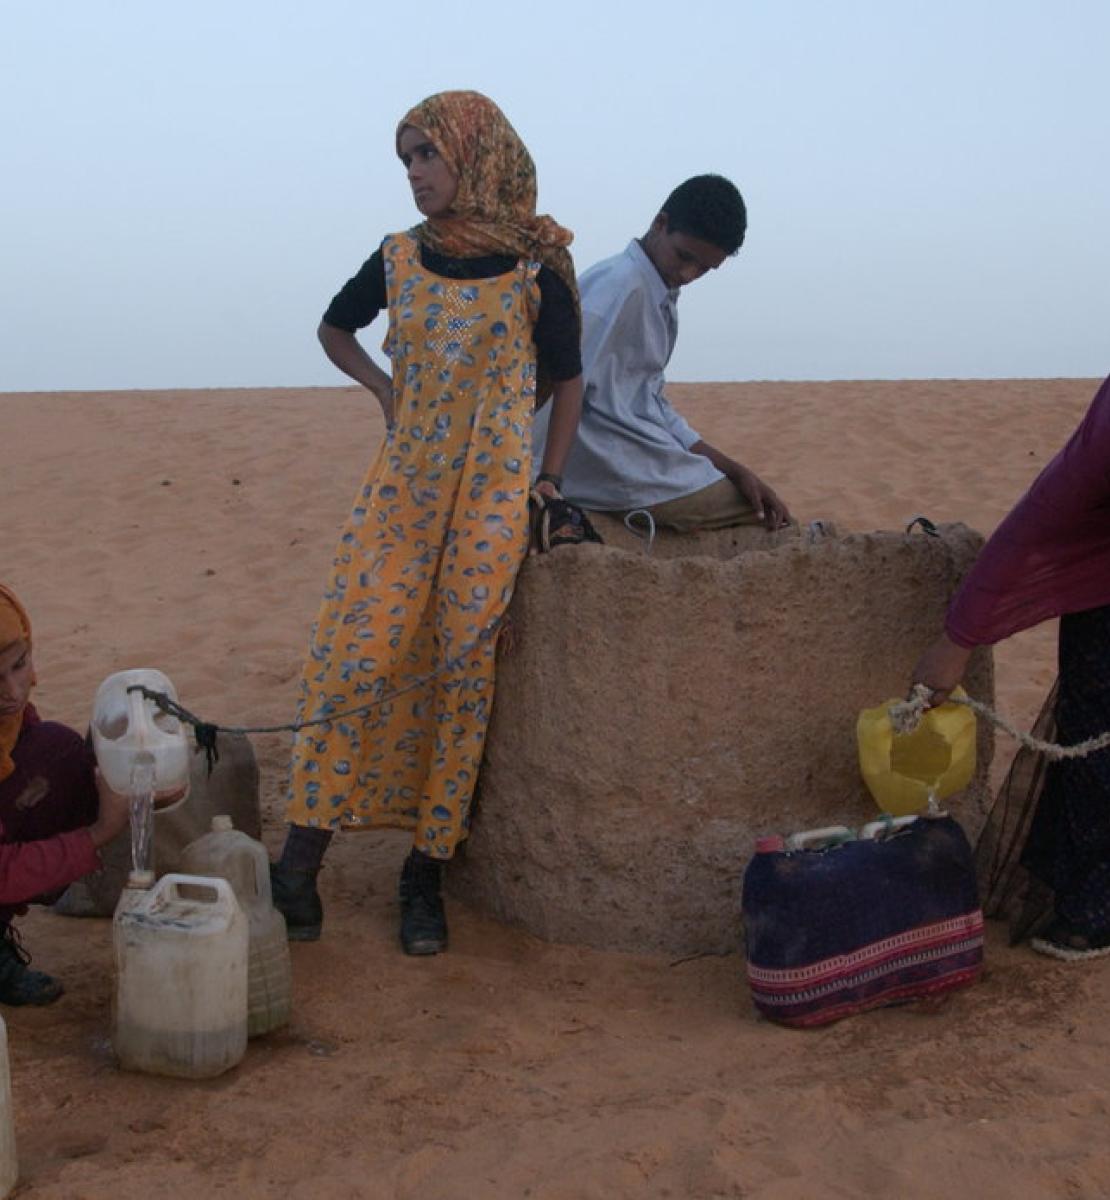 En Algérie, au milieu du désert, quatre jeunes réfugiés sahraouis tentent de remplir des cruches d'eau à partir d'un puit.